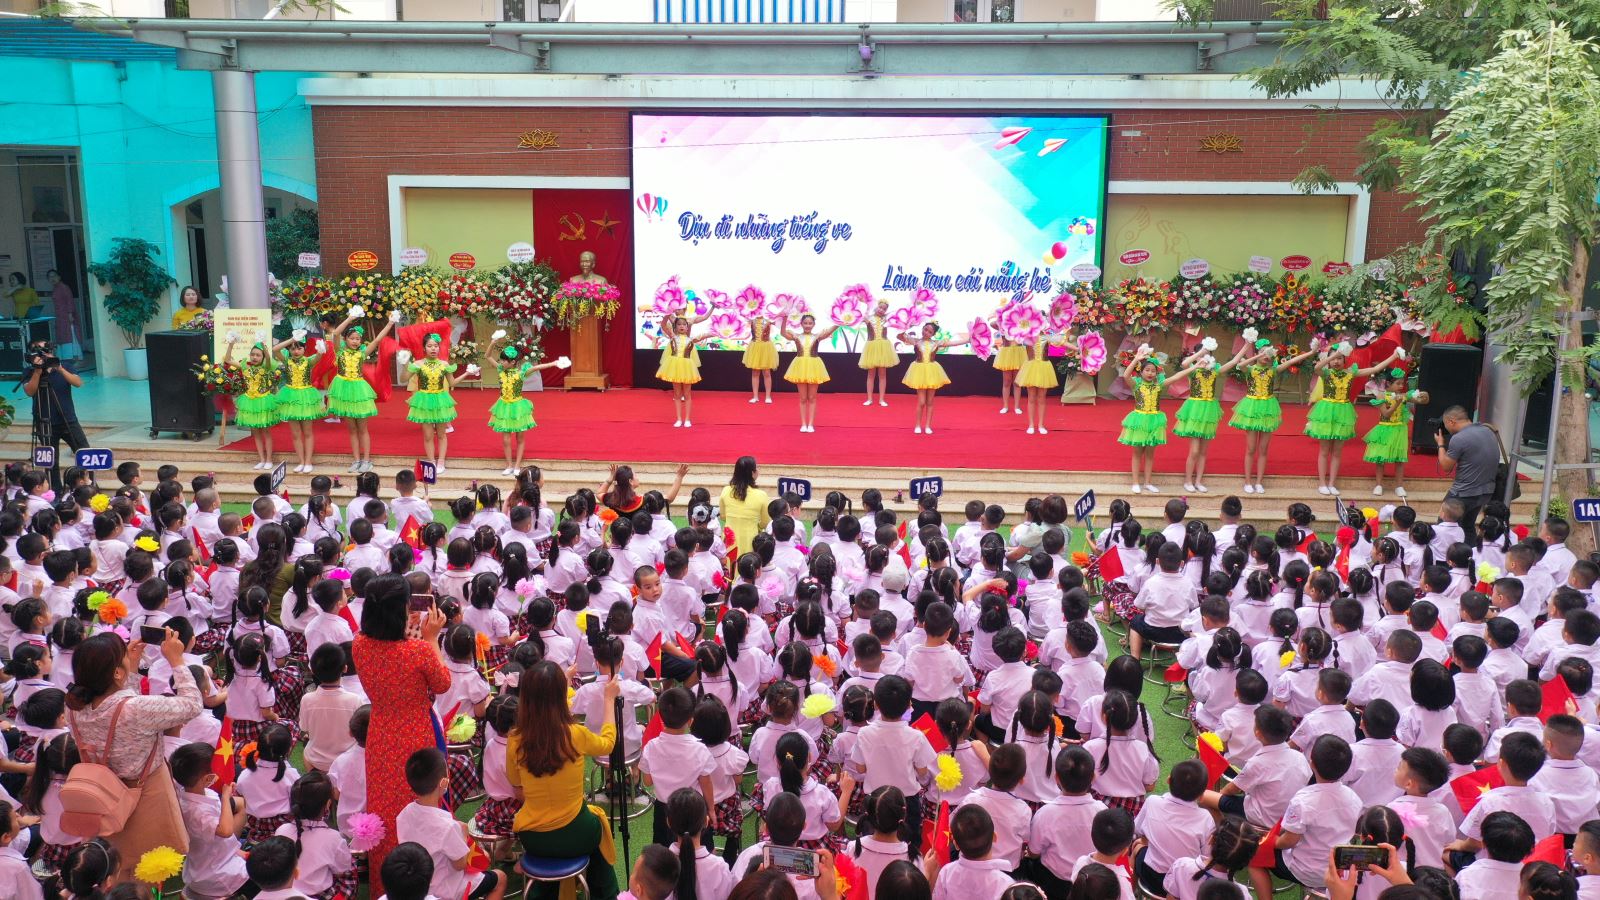 Trường Tiểu học Vĩnh Tuy, Hai Bà Trưng, Hà Nội đã khiến không khí năm học mới rộn ràng, vui tươi, phấn khởi bởi những tiết mục sôi động.